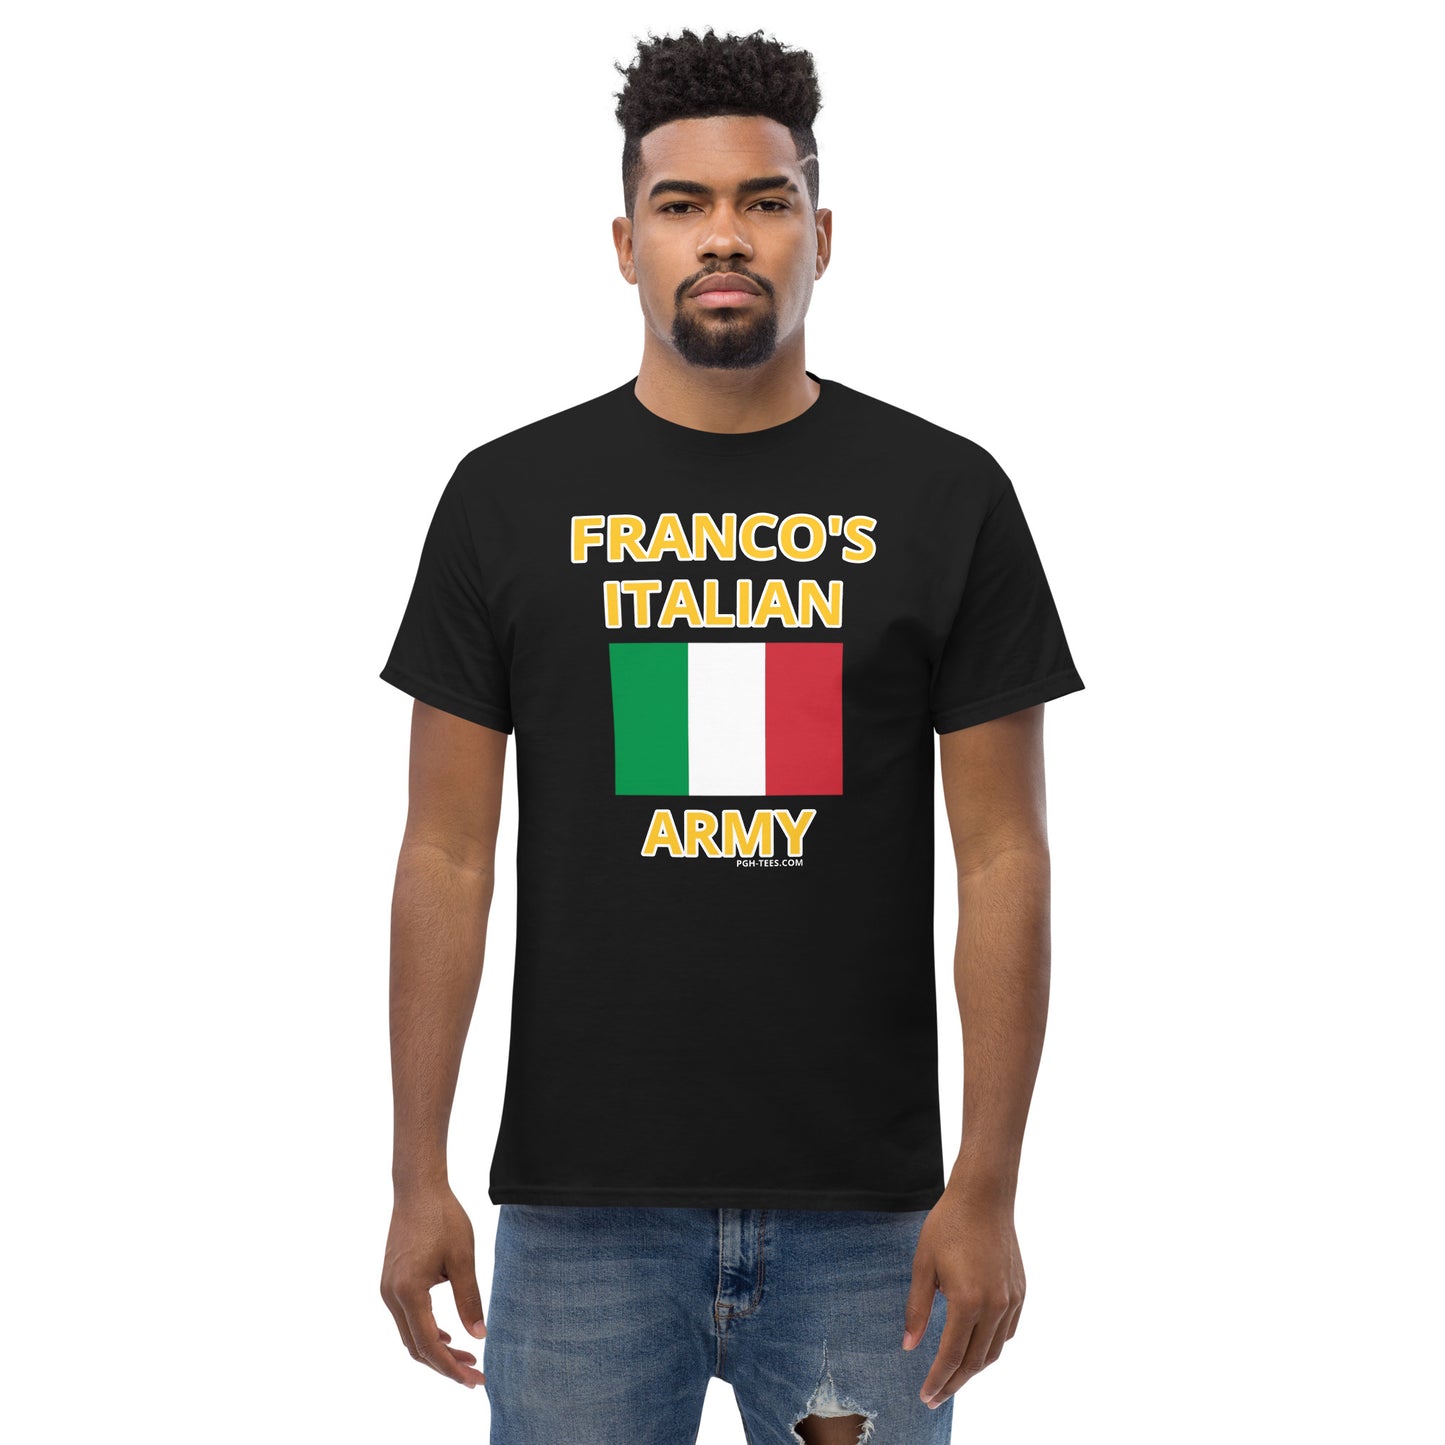 FRANCO'S ITALIAN ARMY